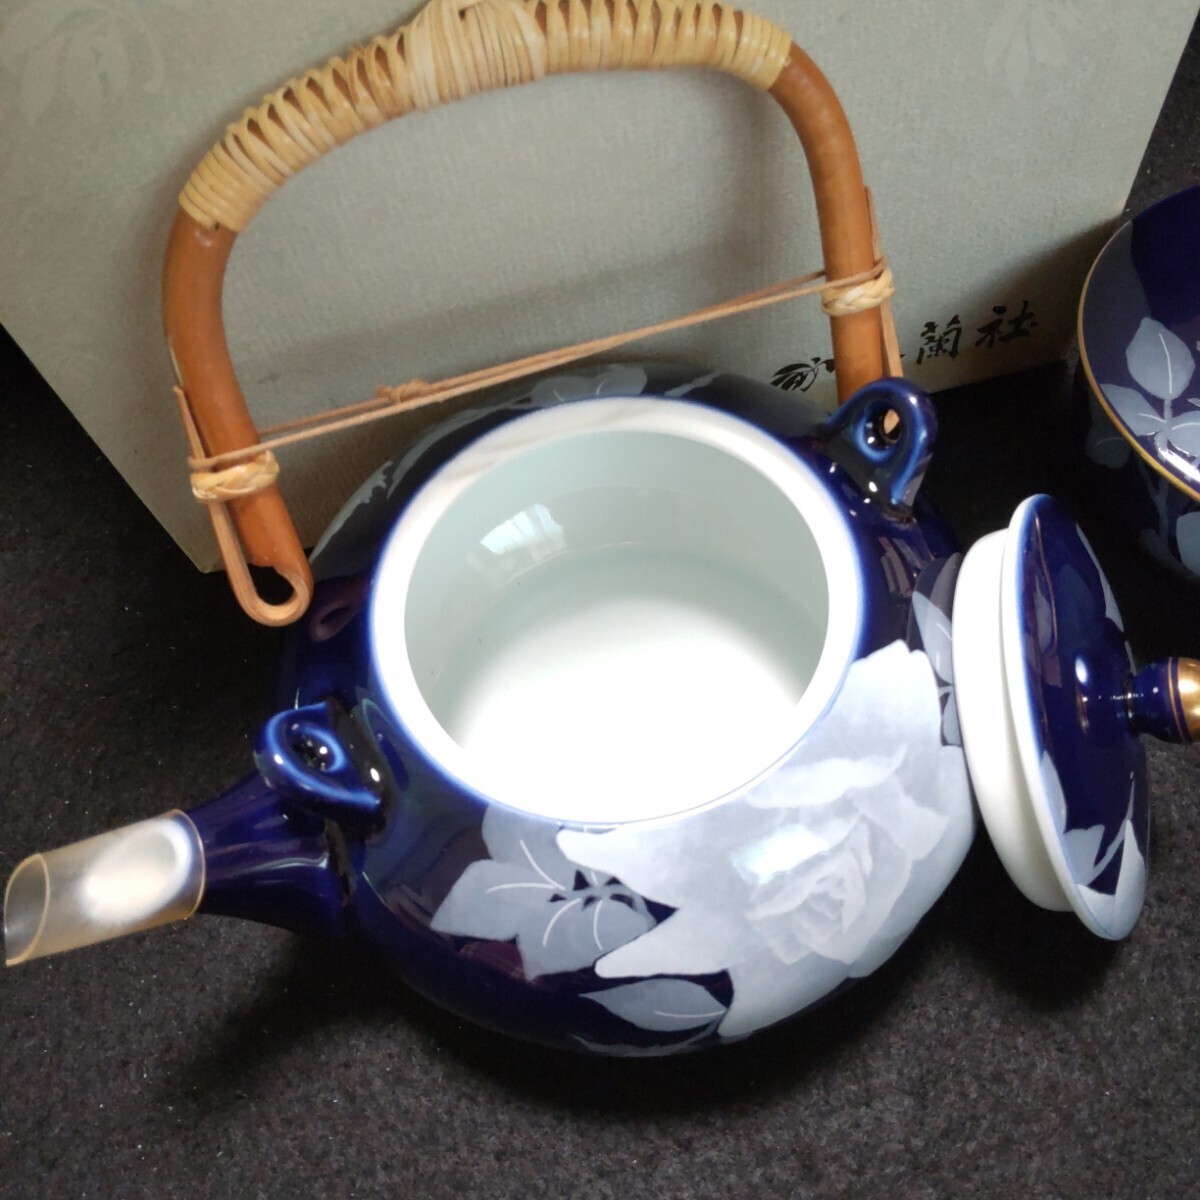 香蘭社 食器4点セット 瑠璃 薔薇 茶器セット 茶の間セット ペアカップ&ソーサー 茶托の画像3